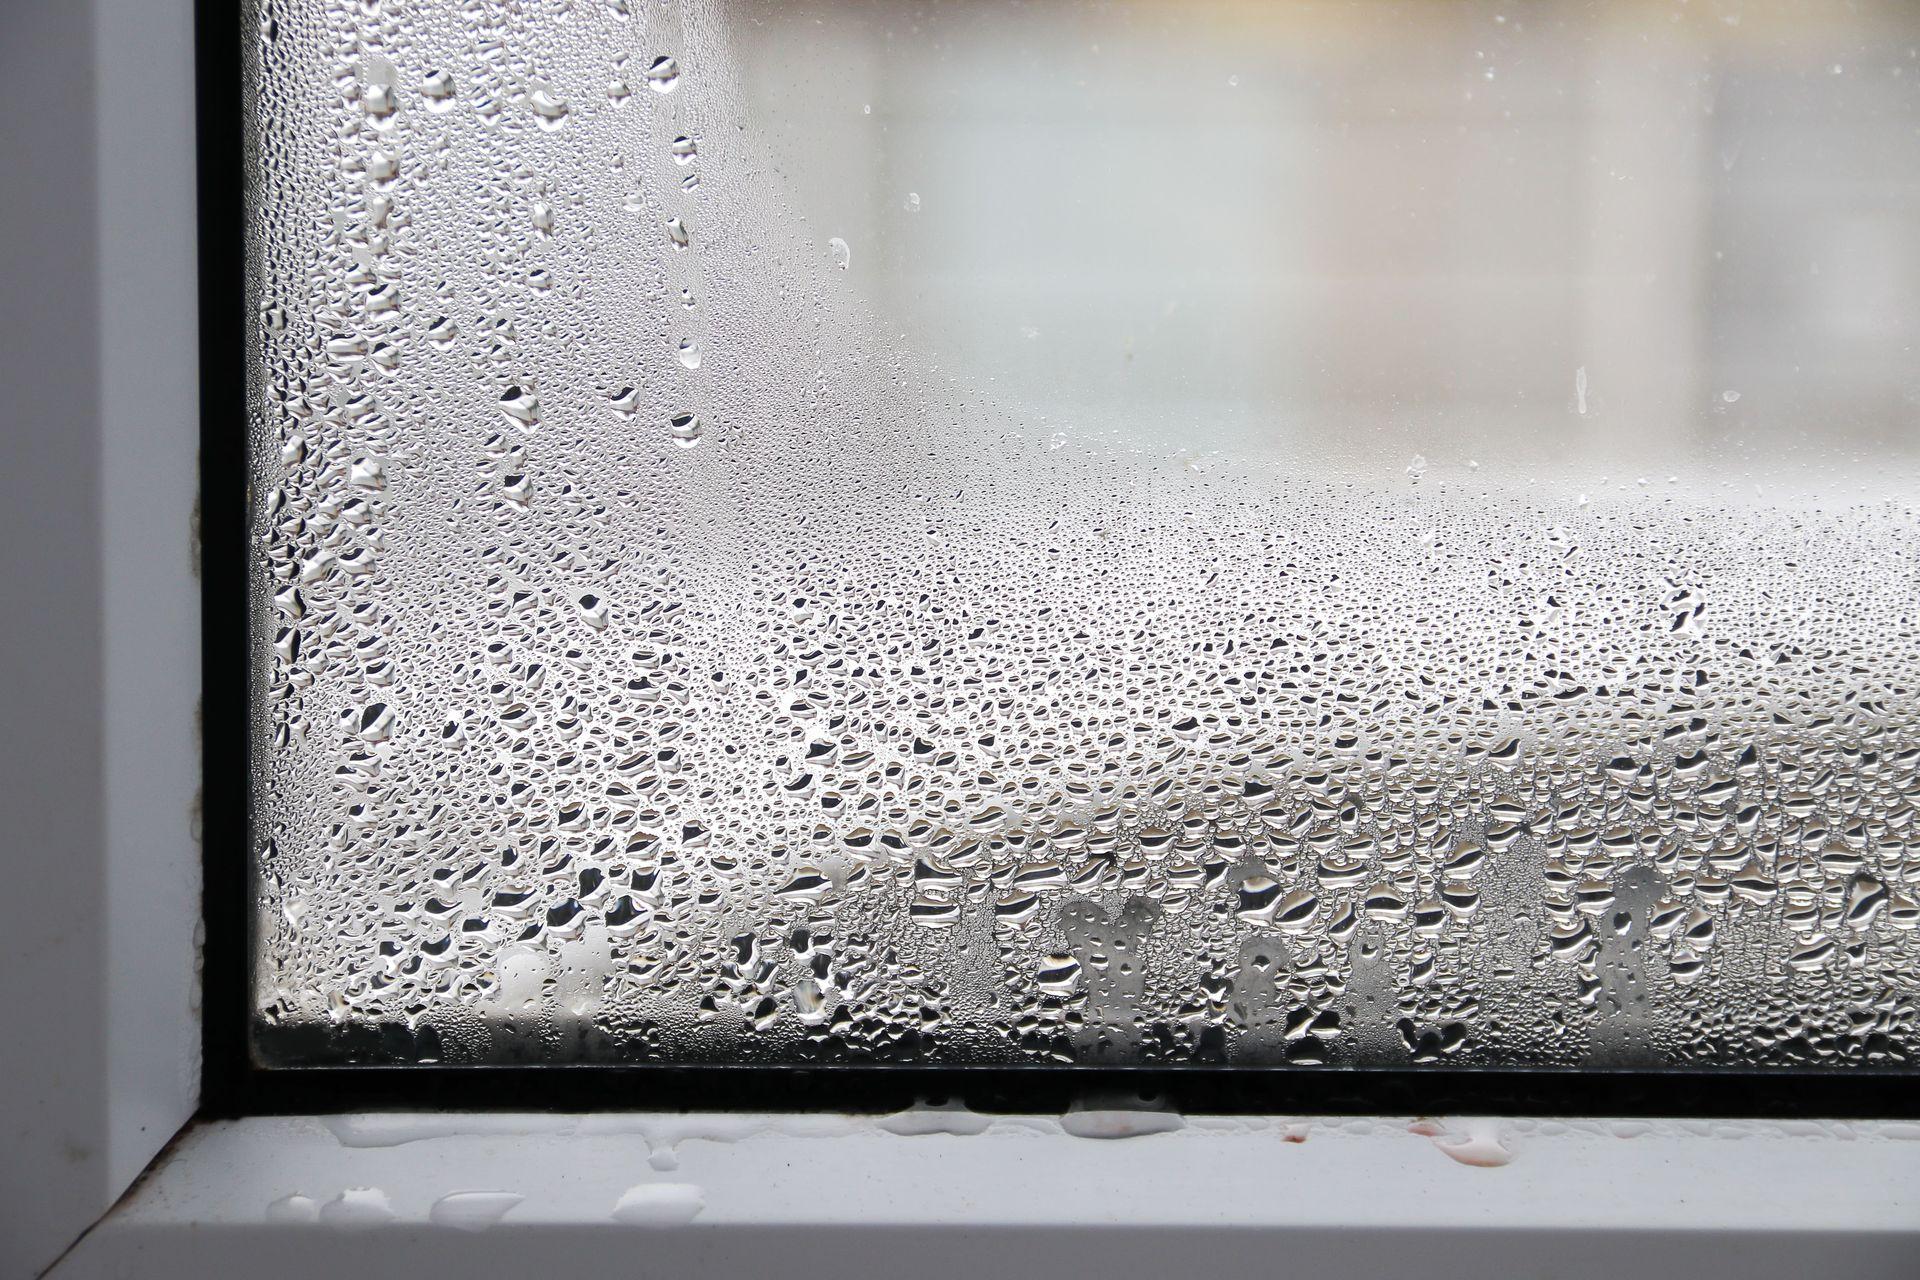 Condensation on a Caravan Window